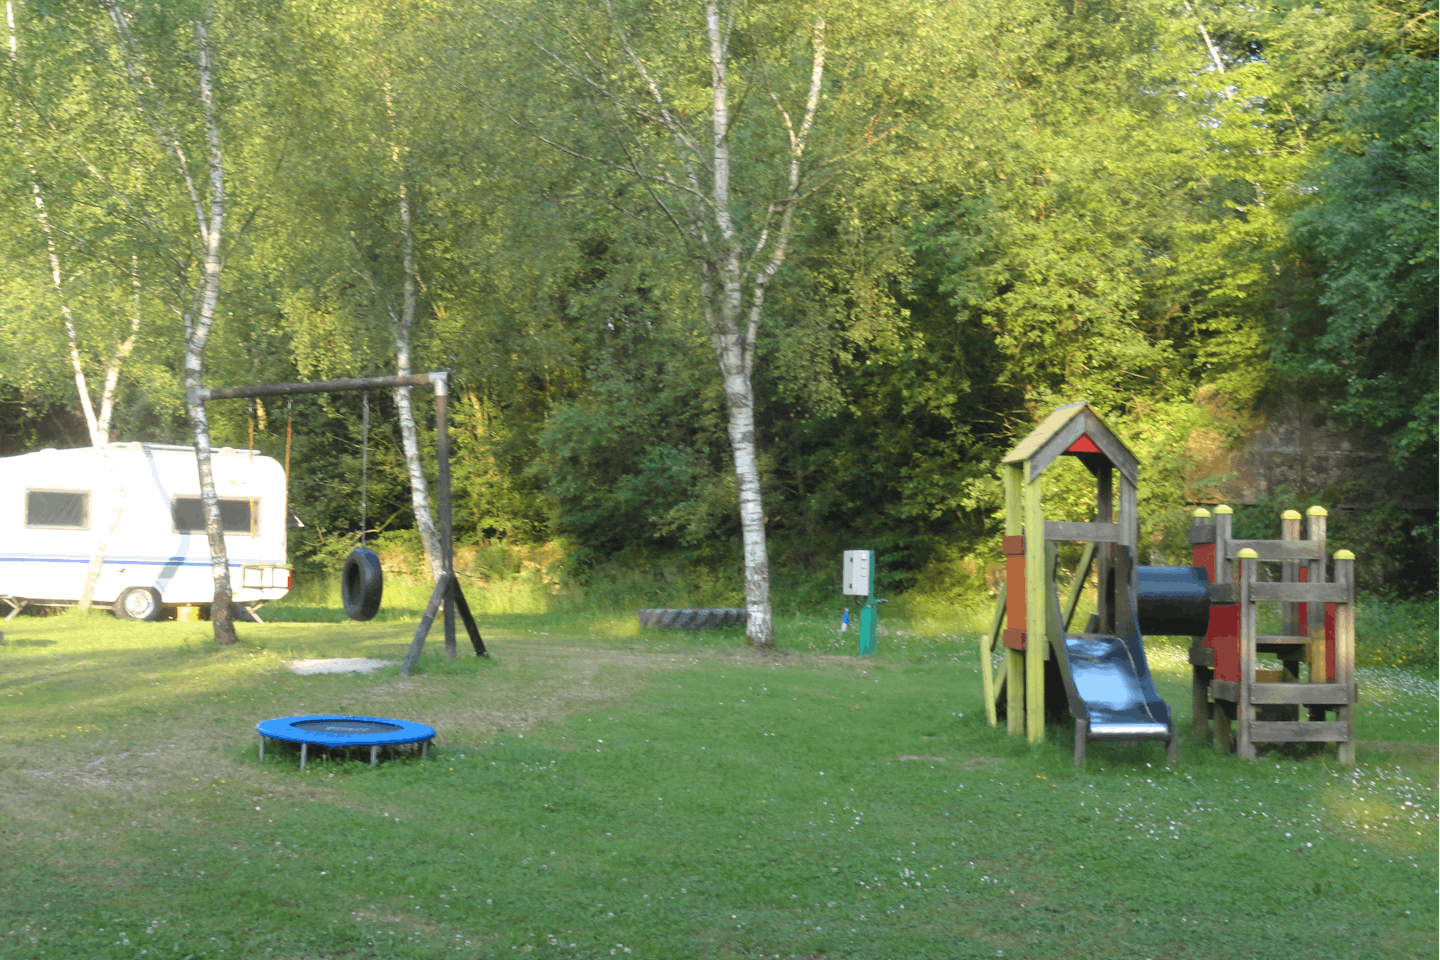 Vodatent @ Camping les Bouleaux - Kinderspielplatz auf dem Campingplatz